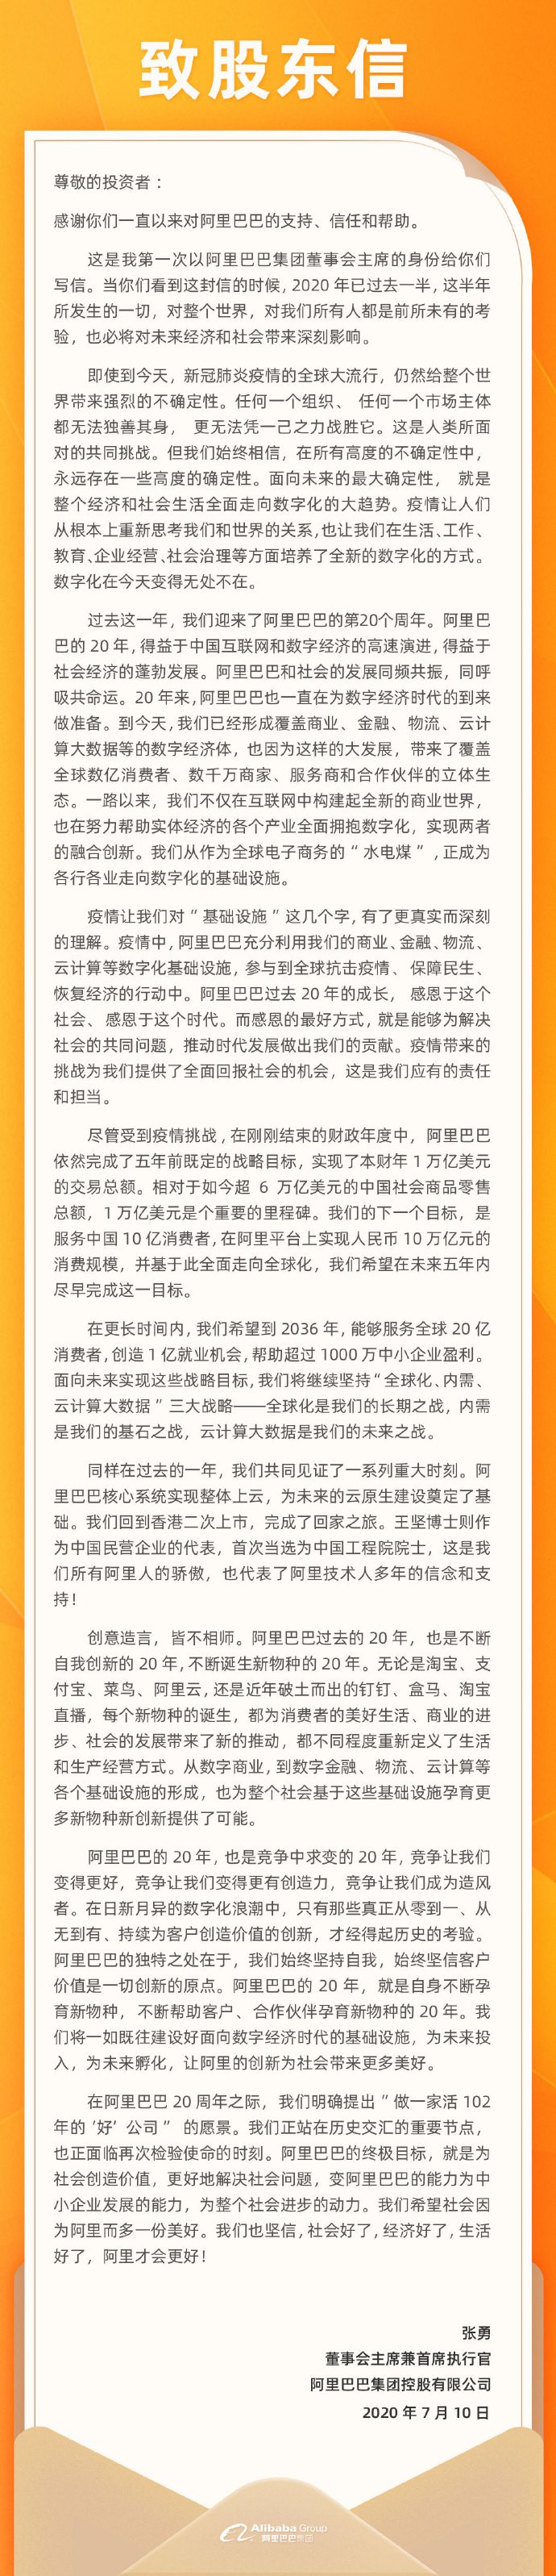 阿里张勇发布致股东信：未来五年内在阿里平台上实现10万亿元的消费规模_人物_电商报